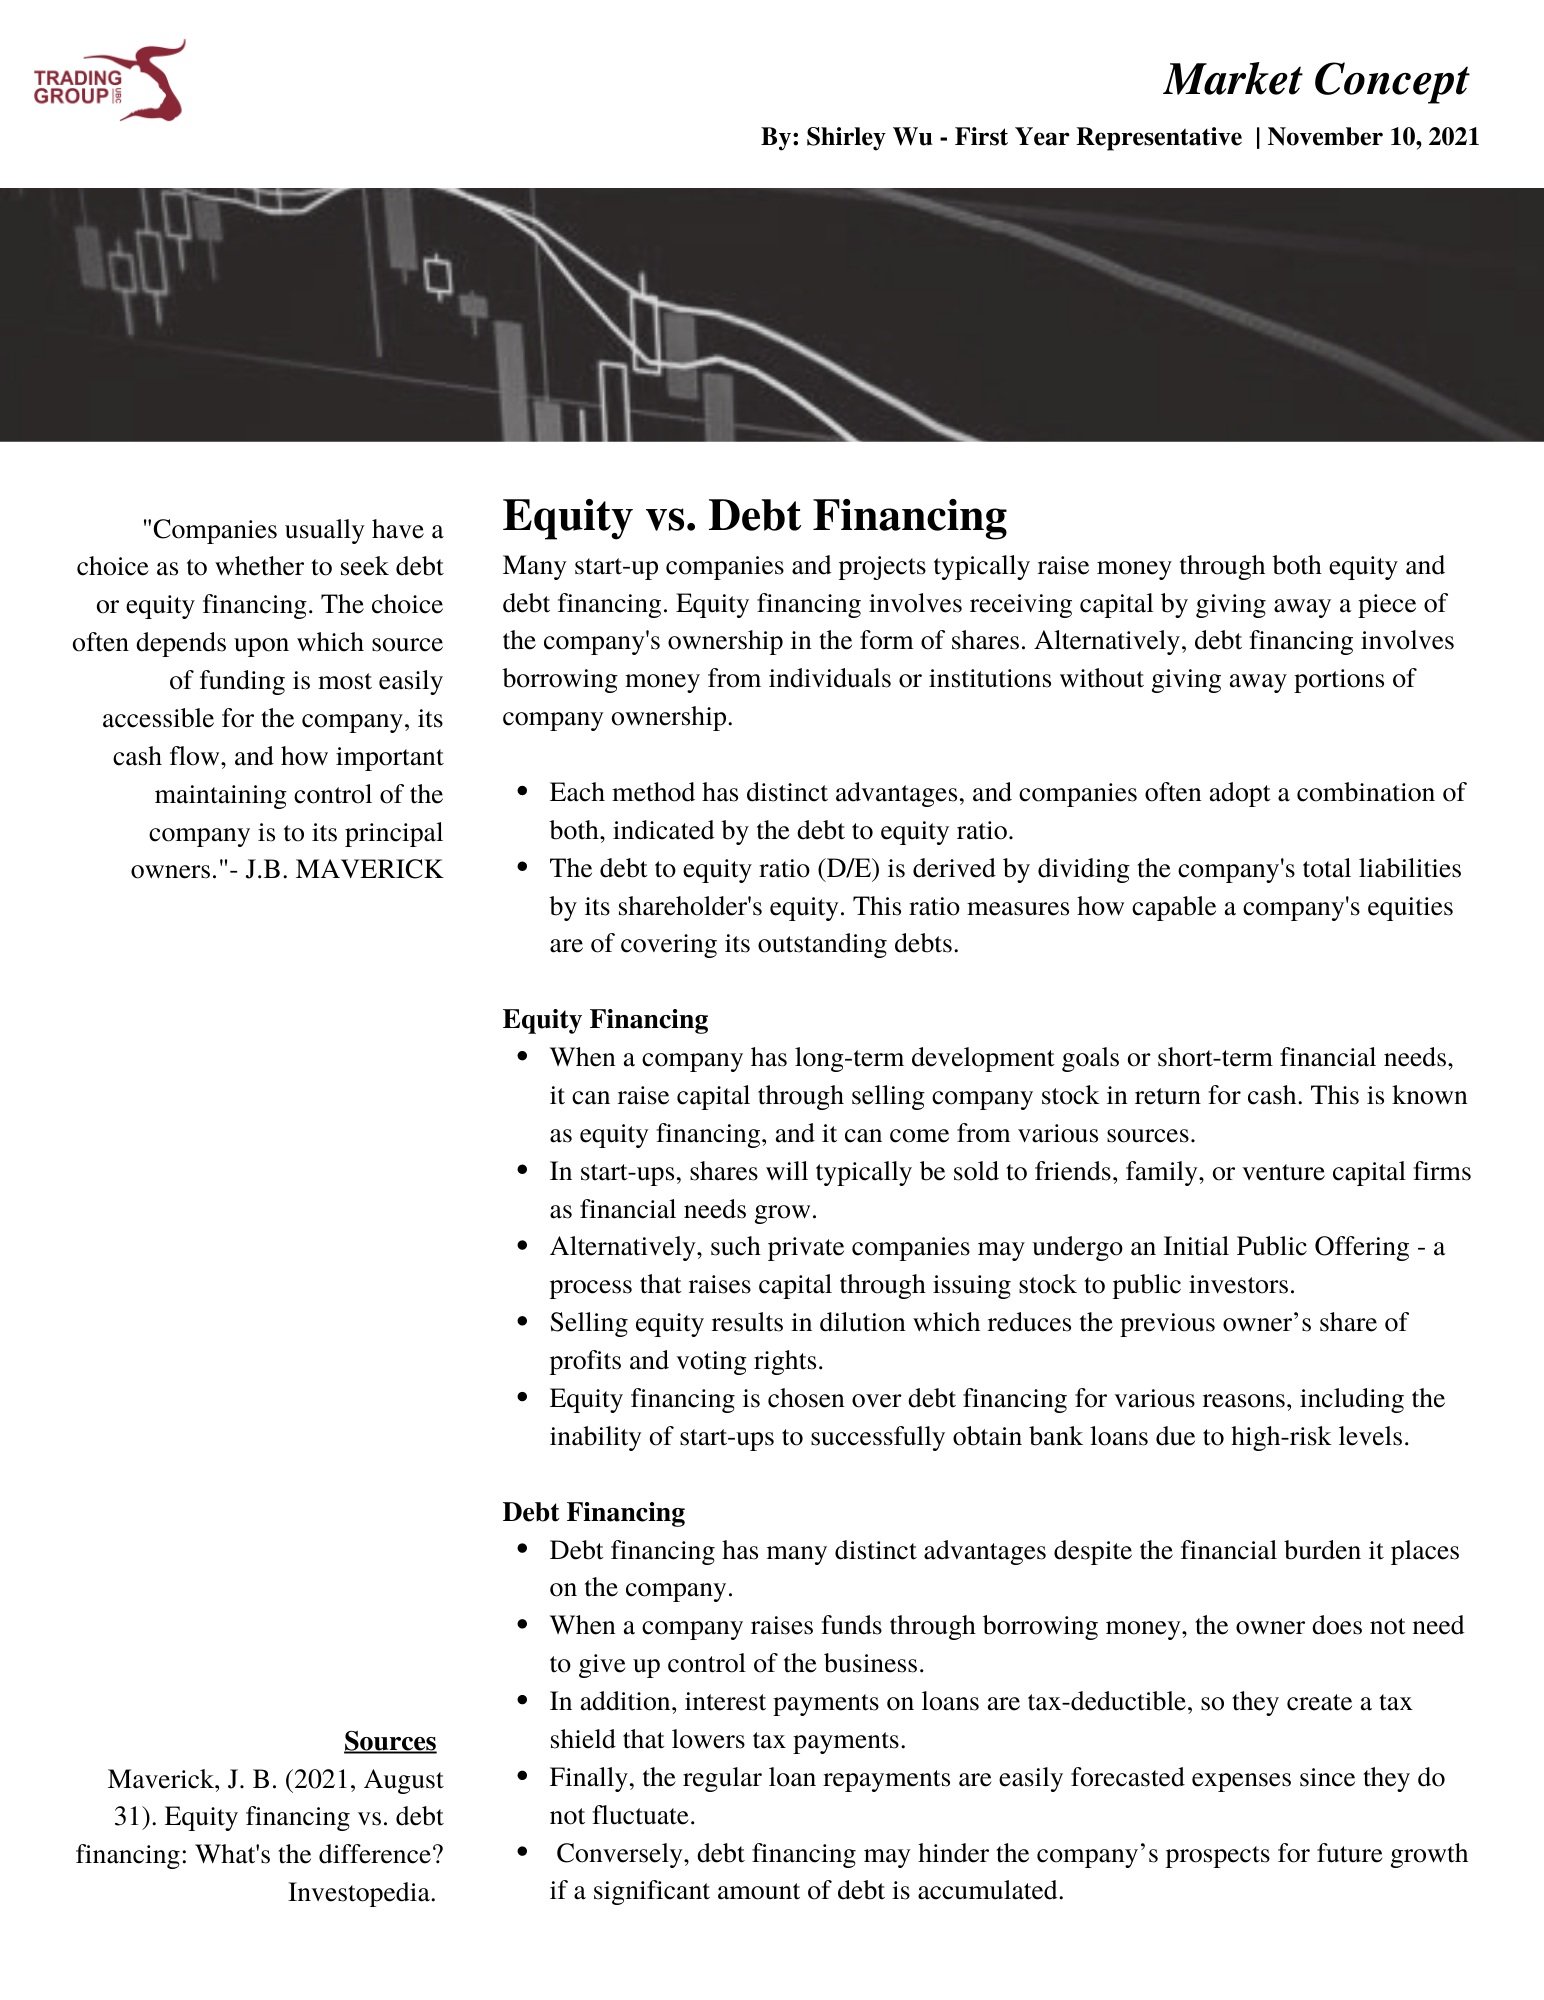 Equity vs. Debt Financing